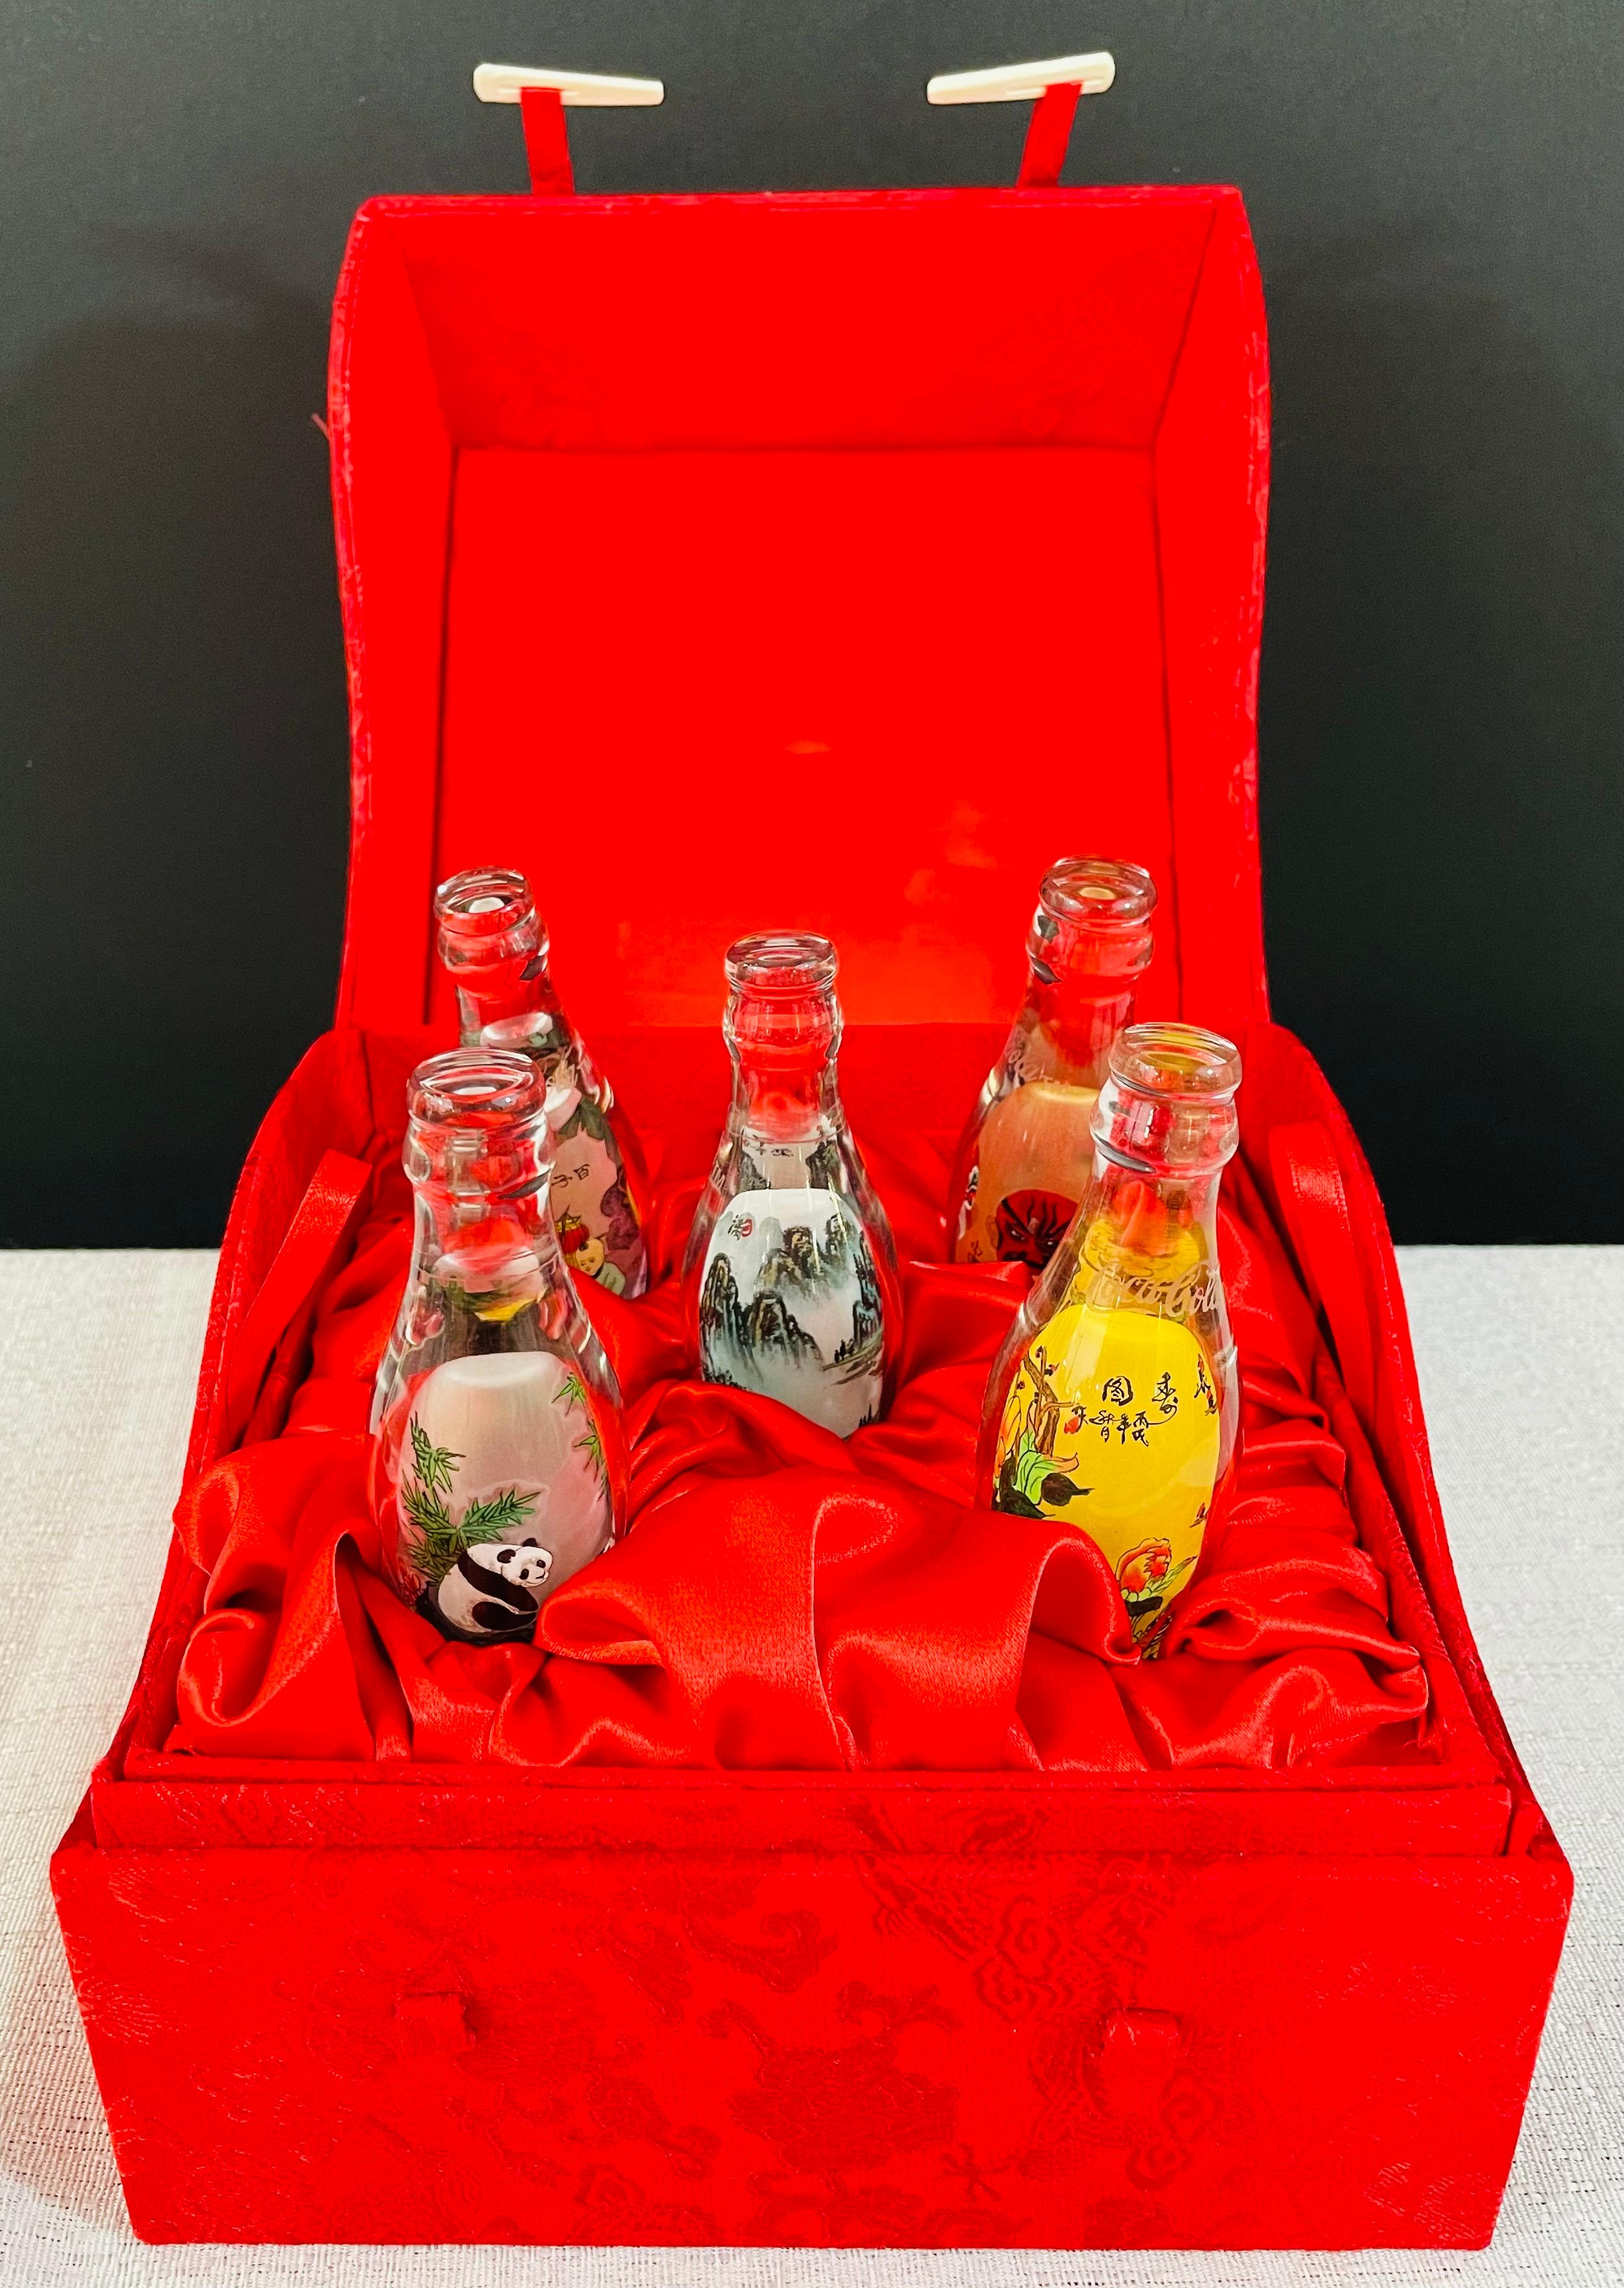 Une édition spéciale de Coca-Cola faite sur mesure, composée de 5 bouteilles miniatures en verre. Chaque bouteille est imprimée à la main pour représenter des emblèmes chinois traditionnels tels que des masques, des motifs floraux et figuratifs, des